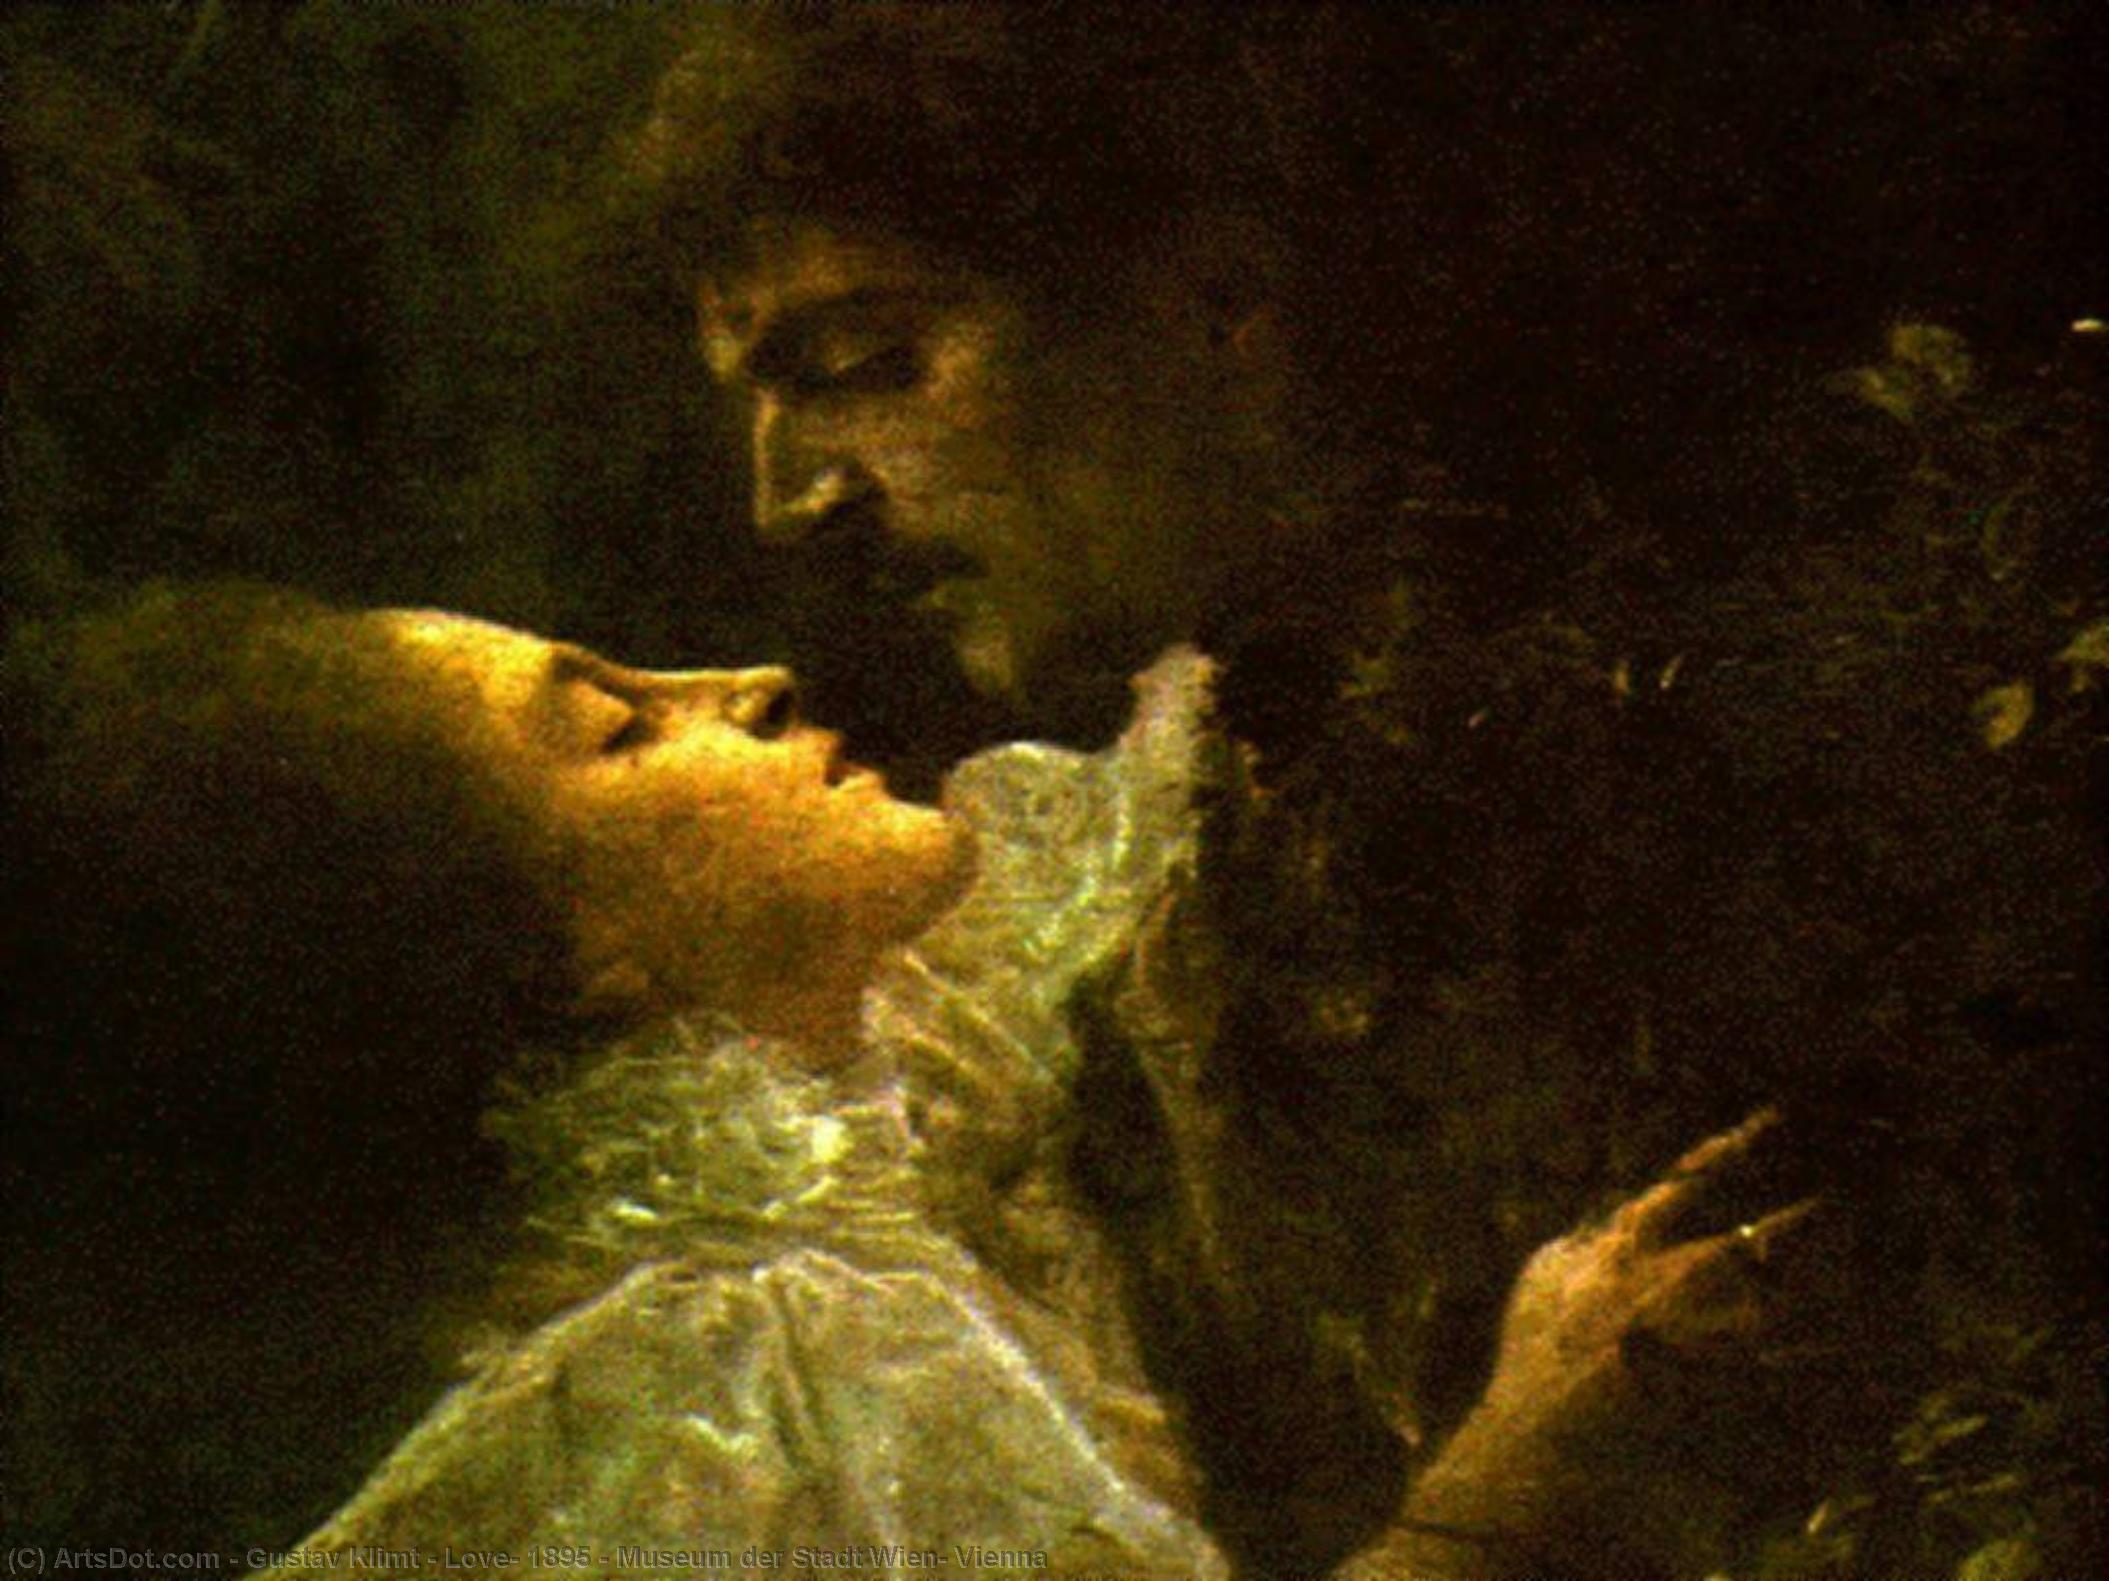 Wikoo.org - موسوعة الفنون الجميلة - اللوحة، العمل الفني Gustav Klimt - Love, 1895 - Museum der Stadt Wien, Vienna